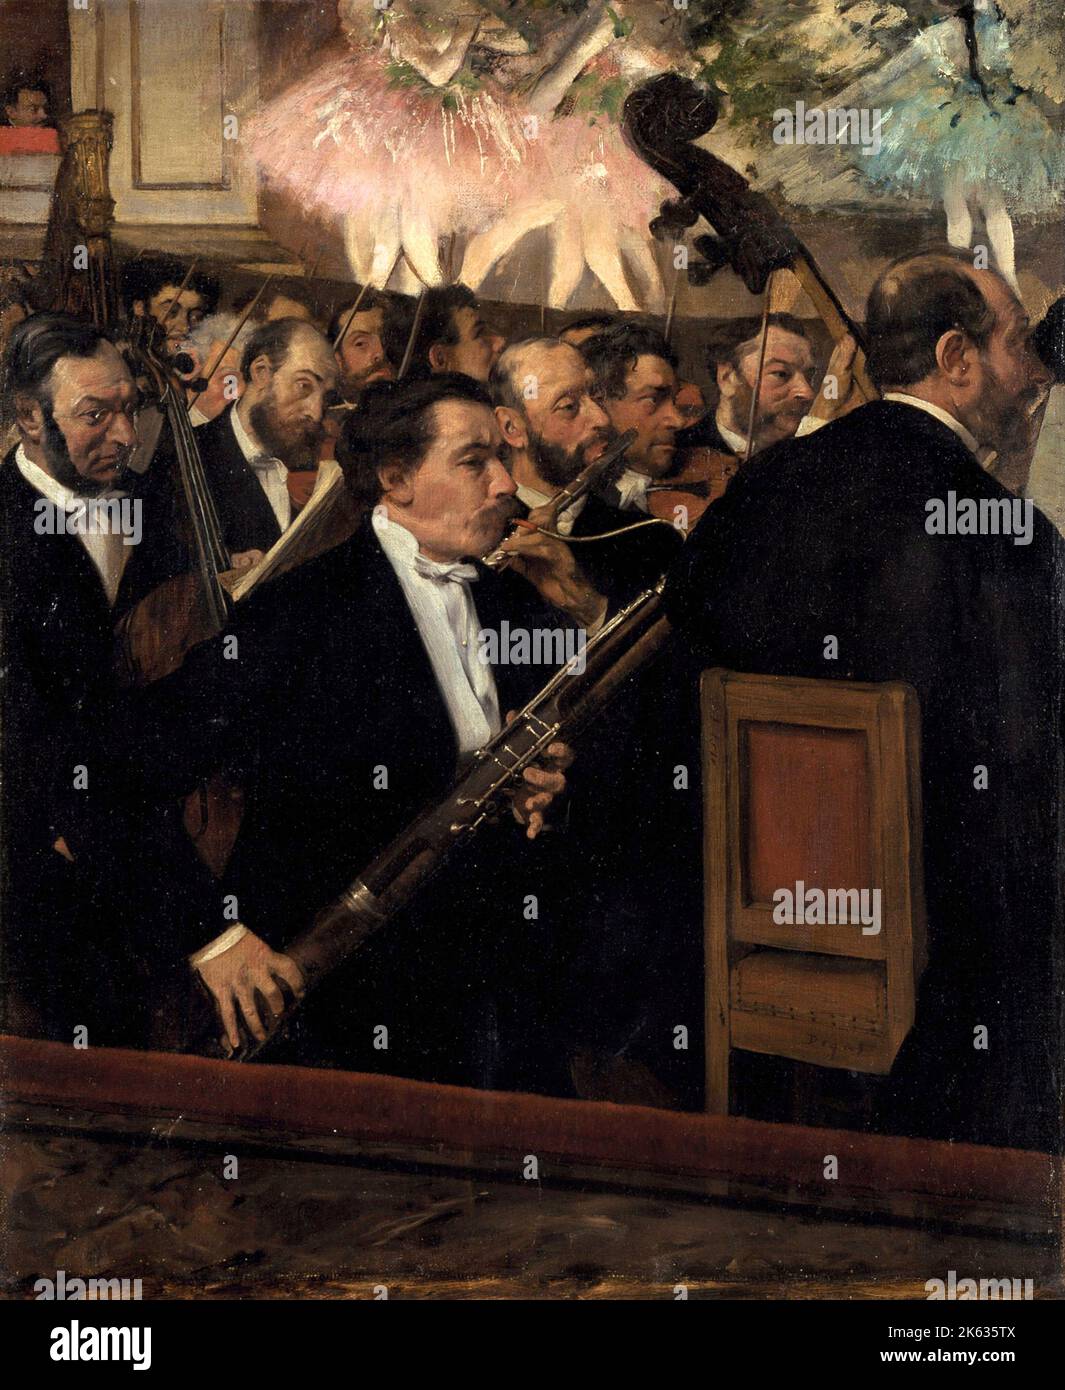 L'Orchestre de l'Opéra, 1870, peinture d'Edgar Degas Banque D'Images